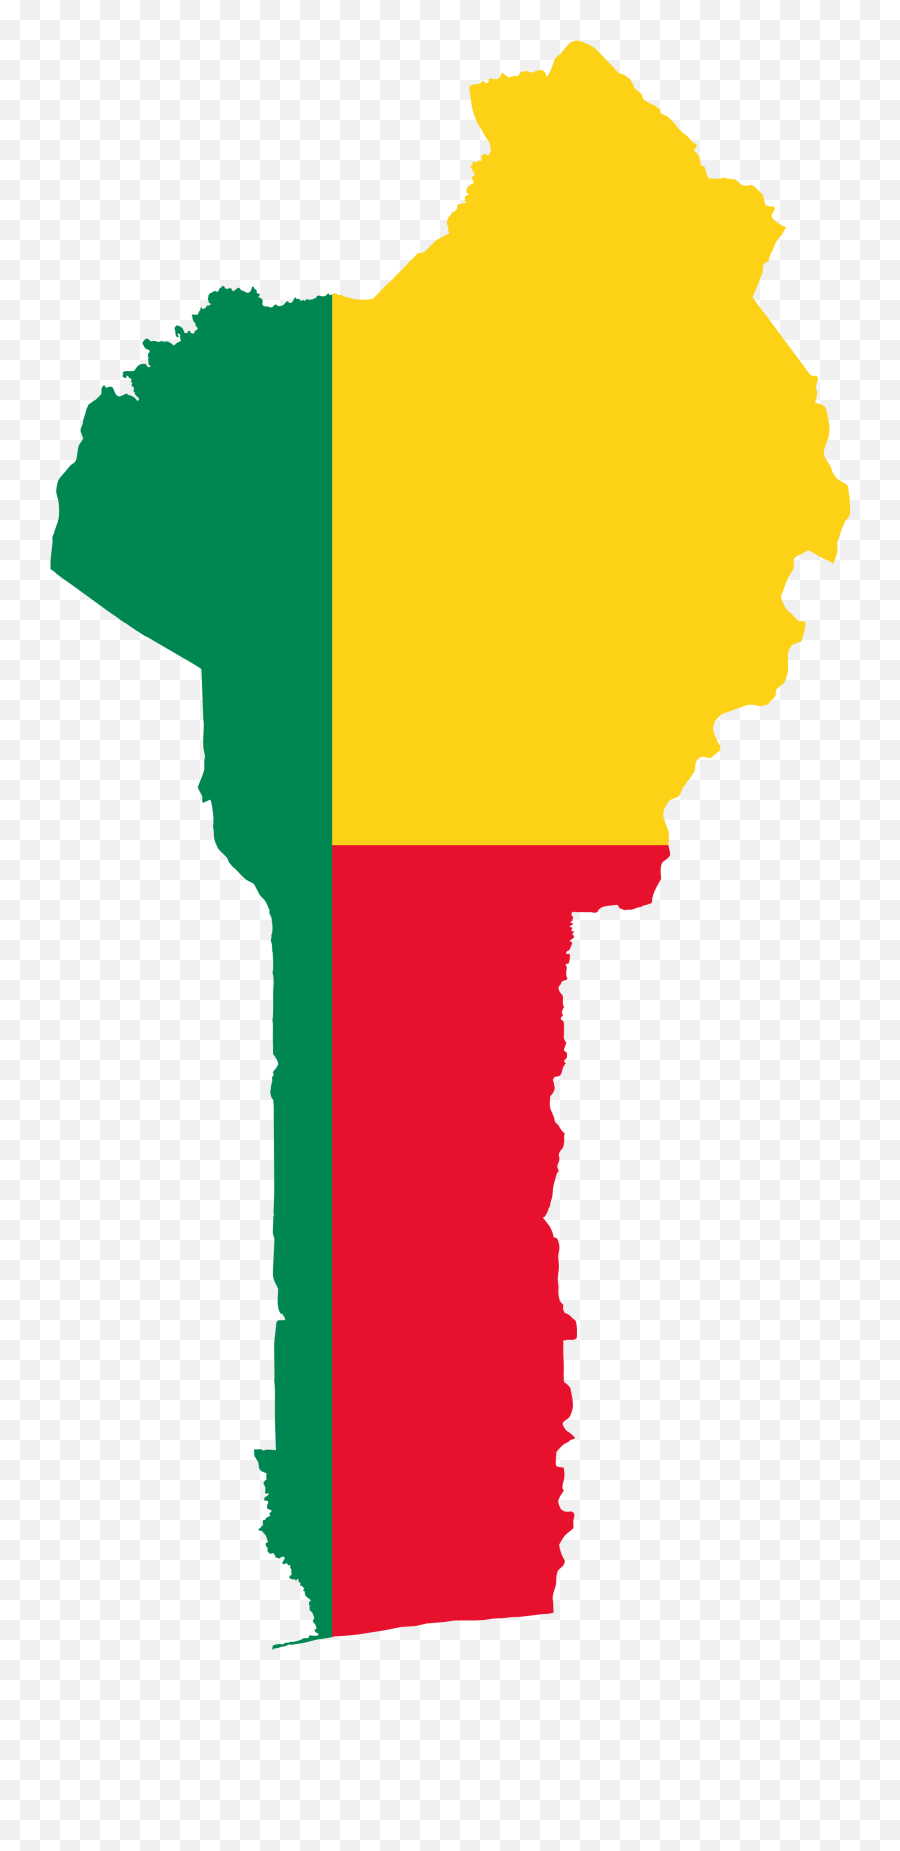 Benin Flag Png Image Background Arts - Benin Map And Flag,Flag Png Images